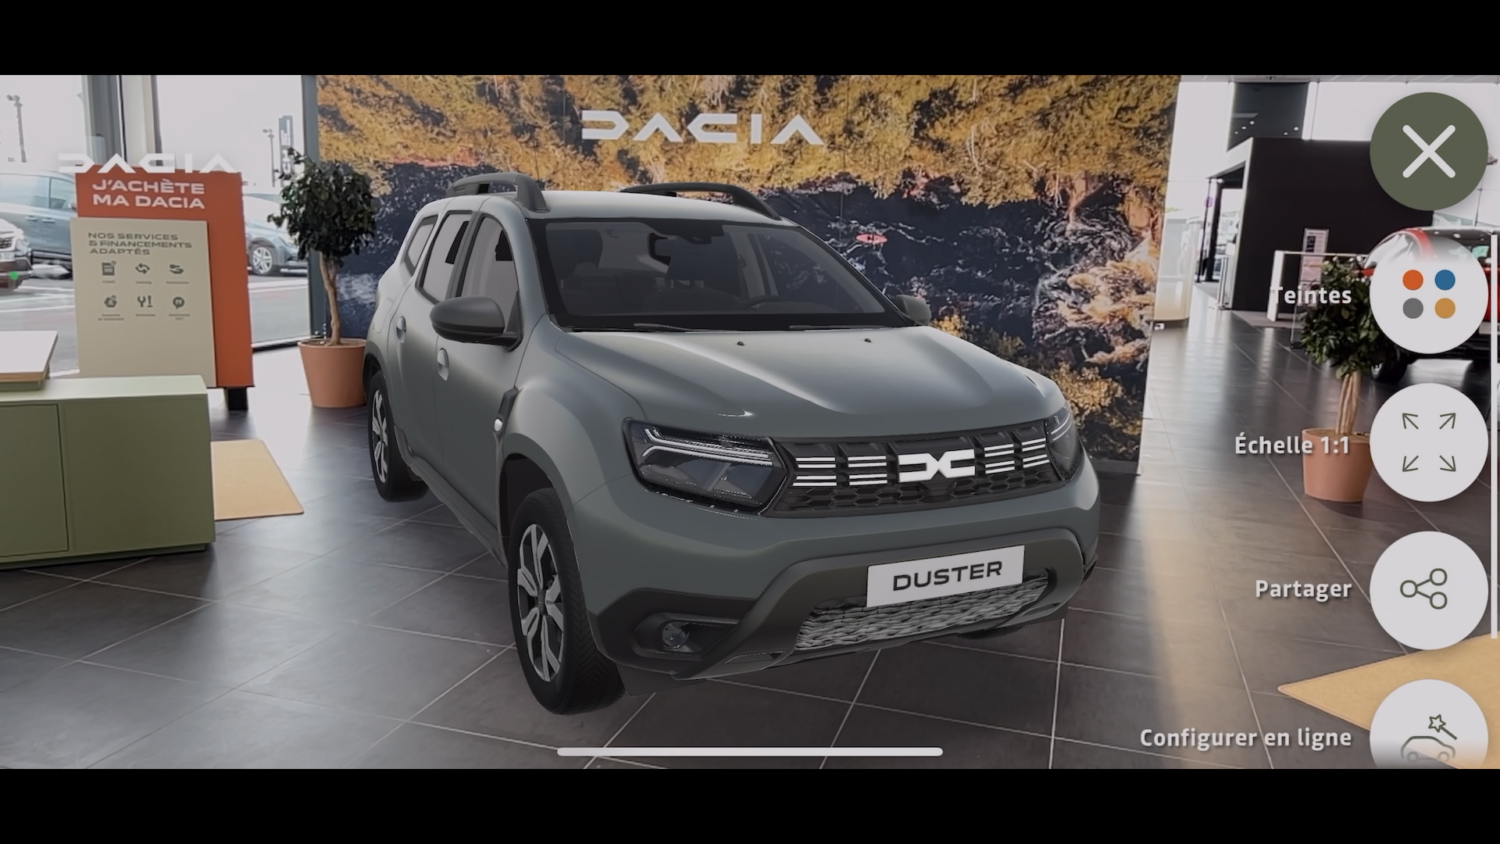 2022 - Dacia AR : l’application de réalité augmentée, simple et utile